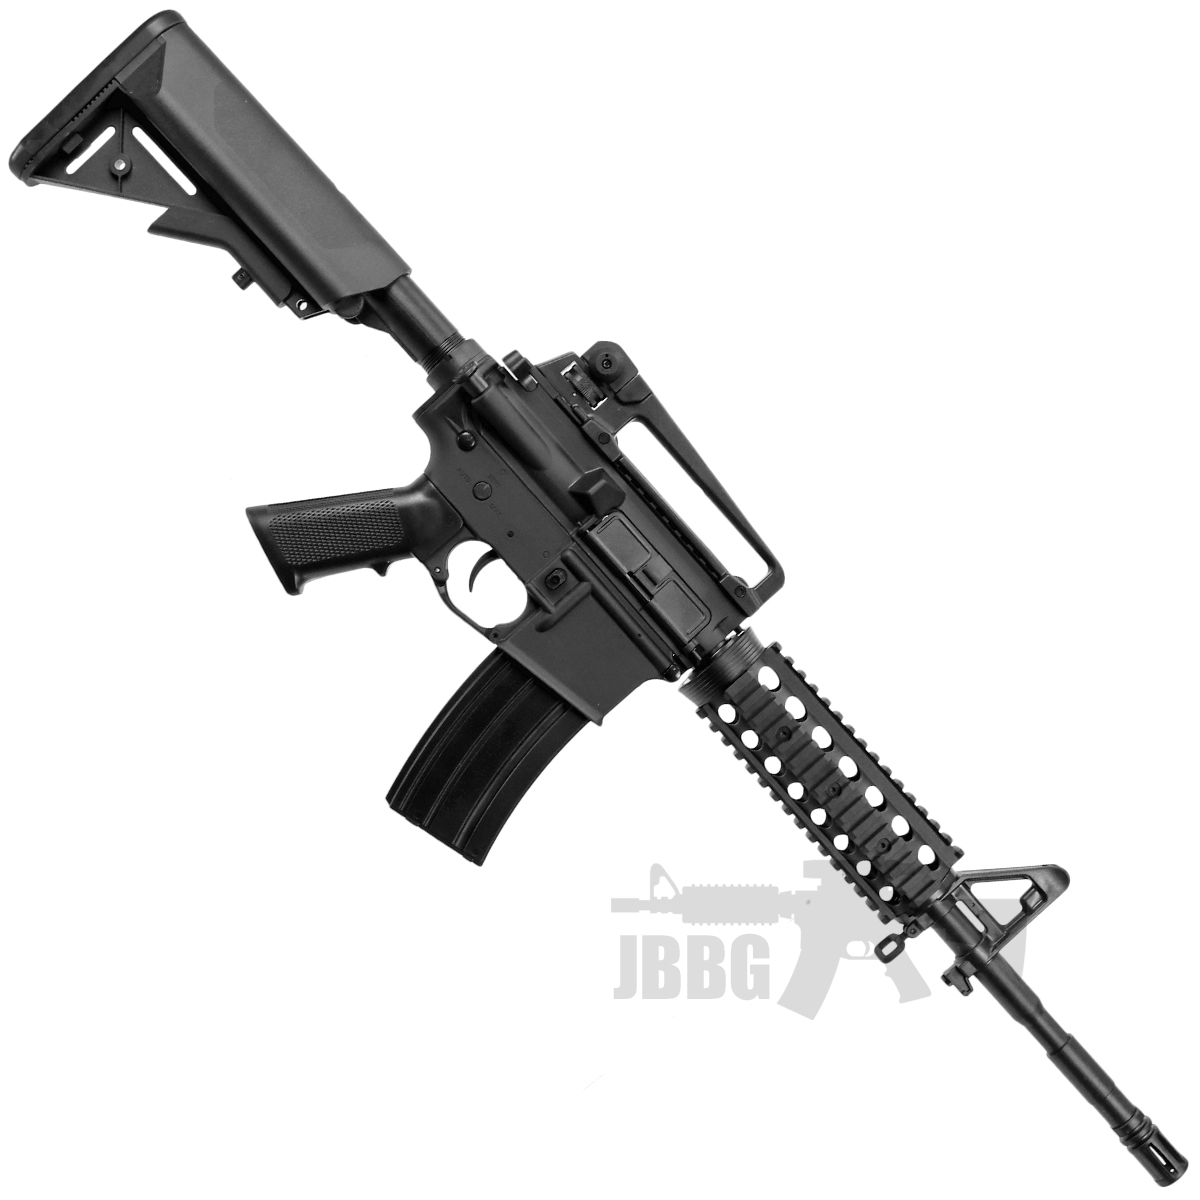 SR4 RIS Bulldog Proline 6mm AEG Airsoft Gun g3 1